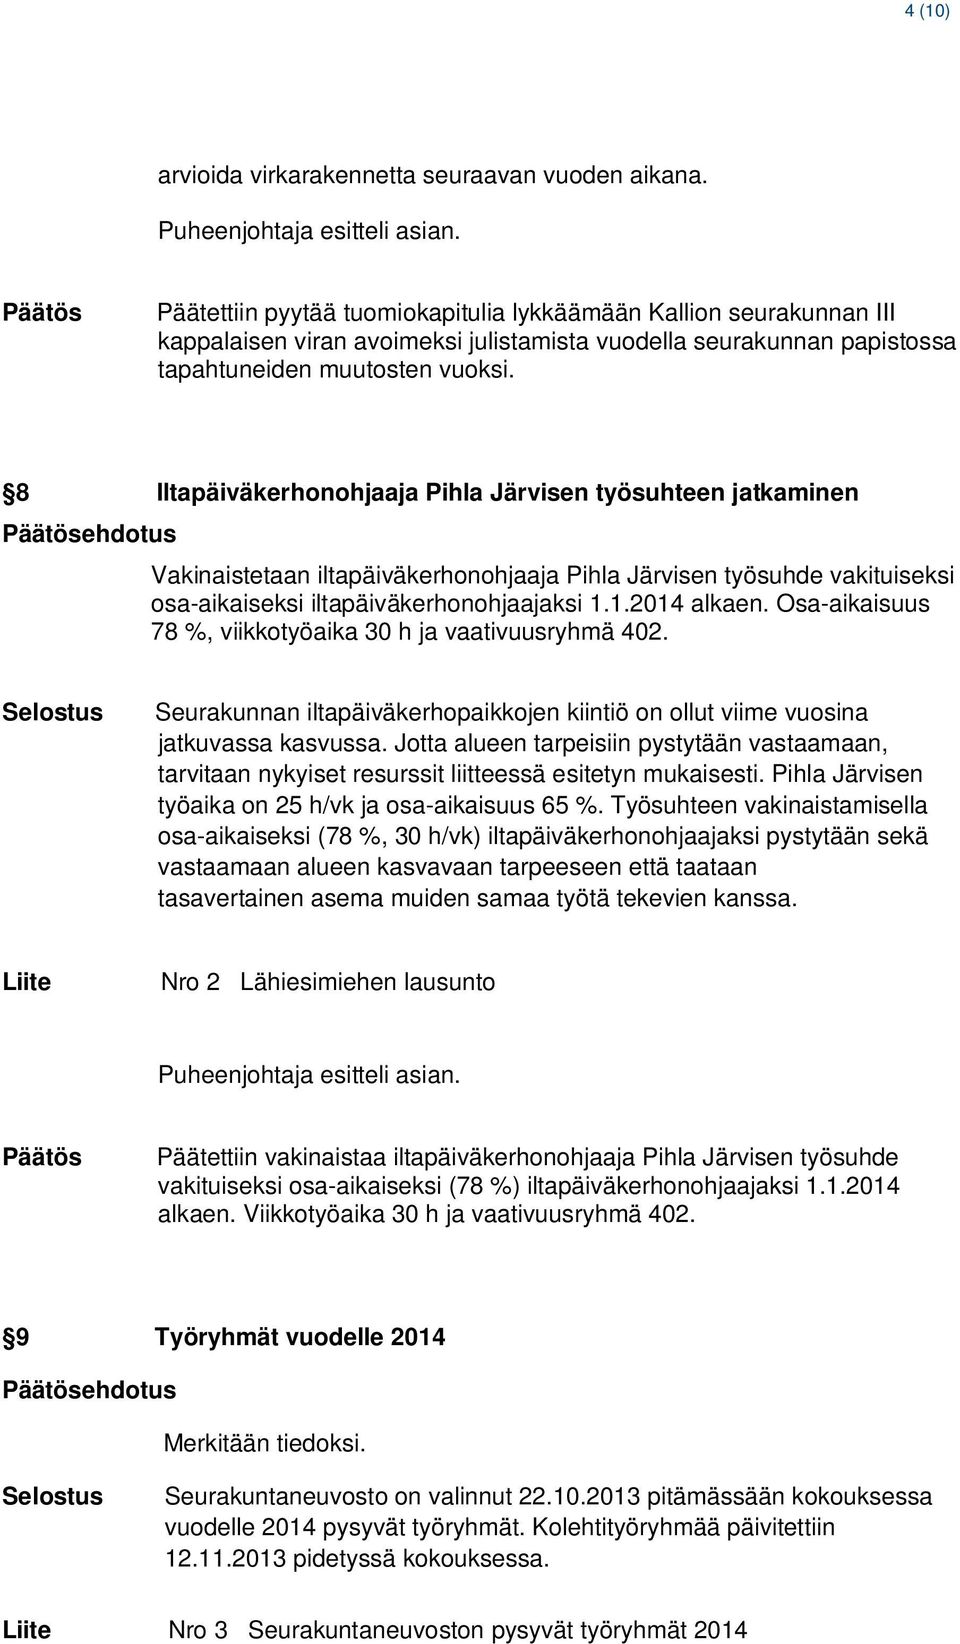 8 Iltapäiväkerhonohjaaja Pihla Järvisen työsuhteen jatkaminen ehdotus Vakinaistetaan iltapäiväkerhonohjaaja Pihla Järvisen työsuhde vakituiseksi osa-aikaiseksi iltapäiväkerhonohjaajaksi 1.1.2014 alkaen.